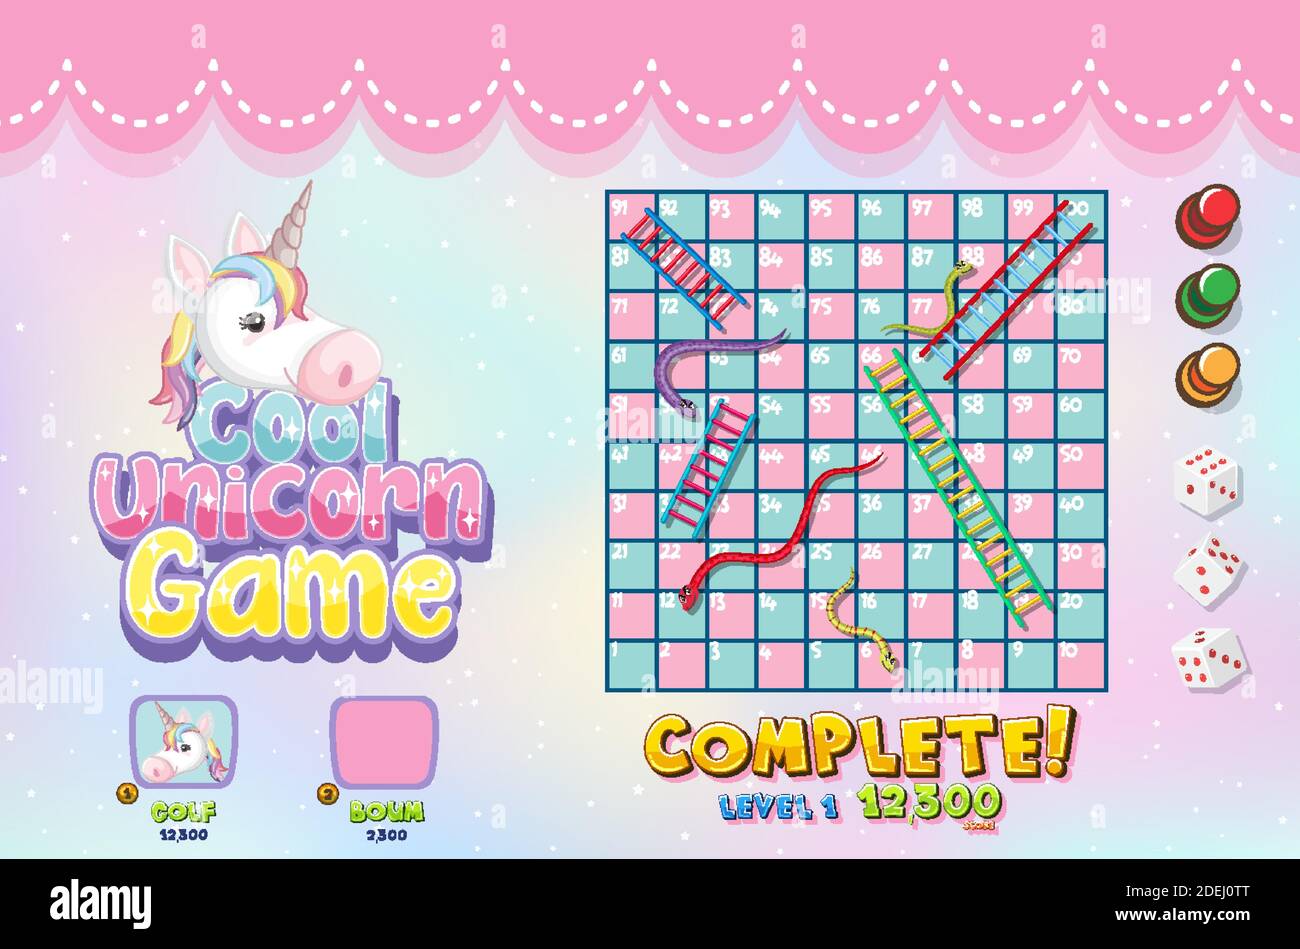 Board Game Template Unicorn Stock Illustrations – 24 Board Game Template  Unicorn Stock Illustrations, Vectors & Clipart - Dreamstime